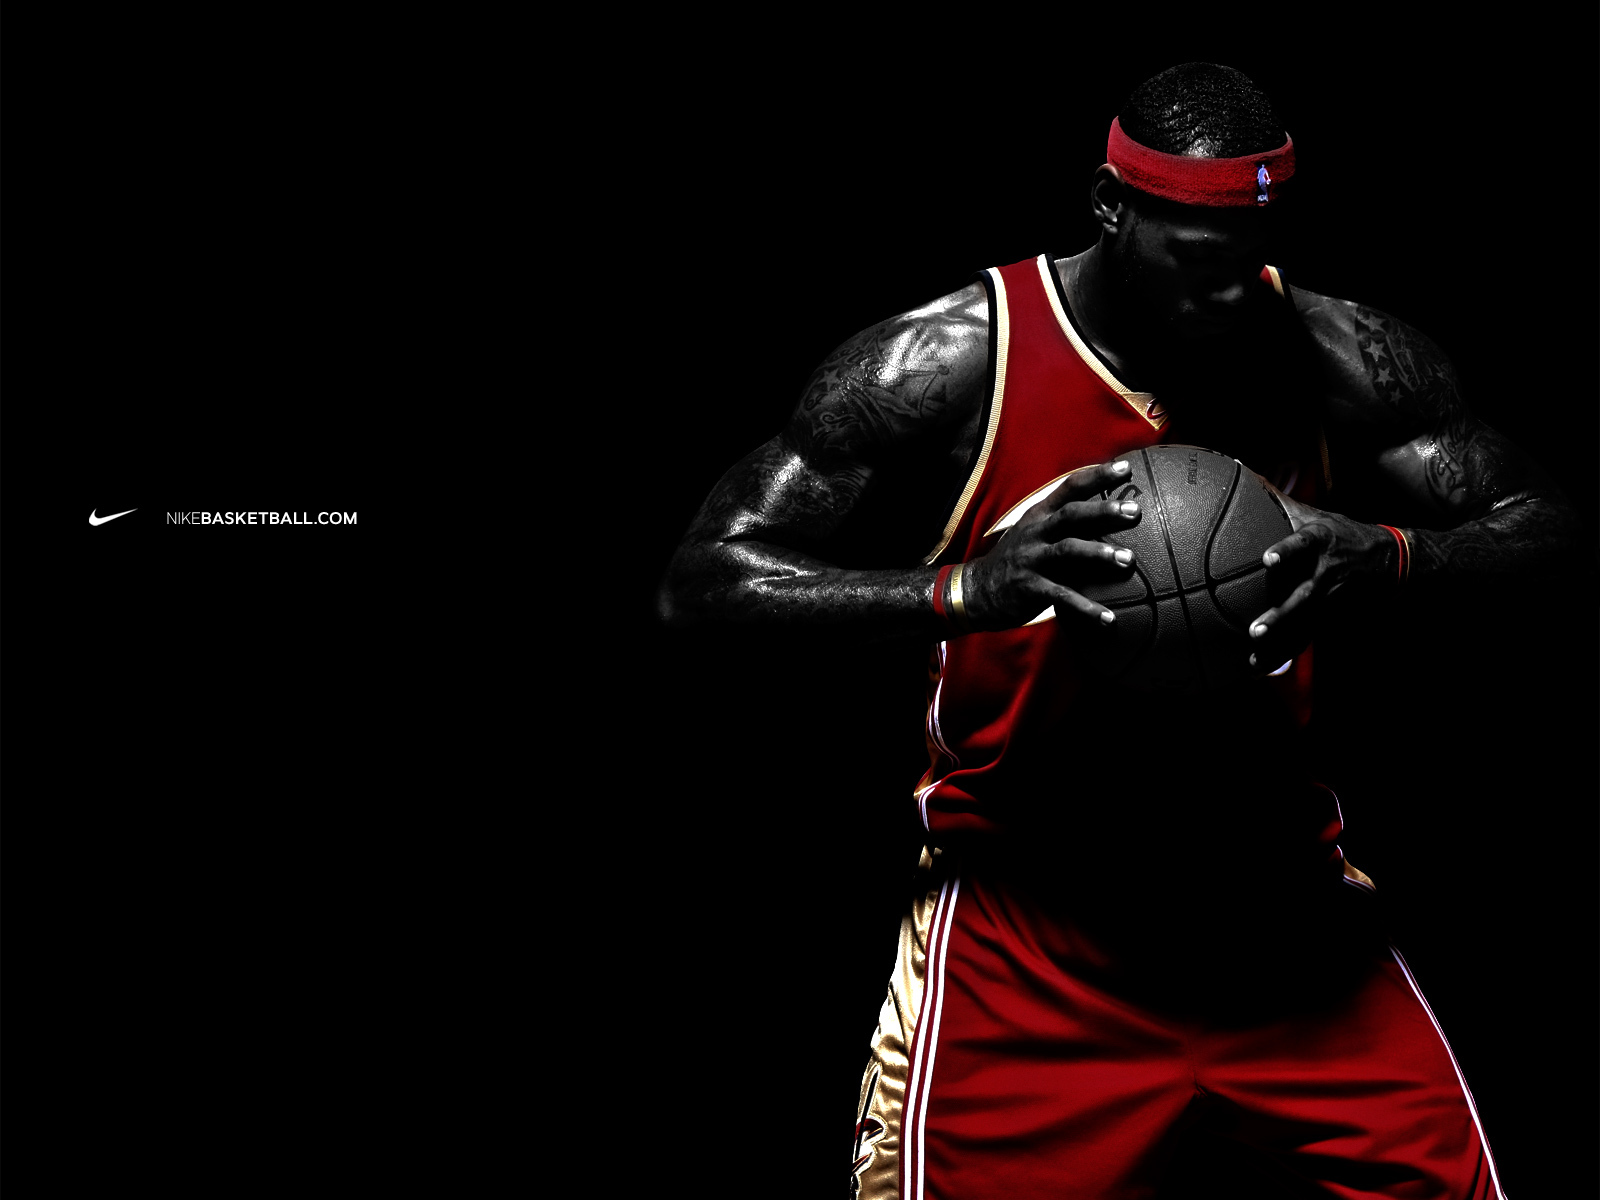 Nike Basketball Wallpaper And Image